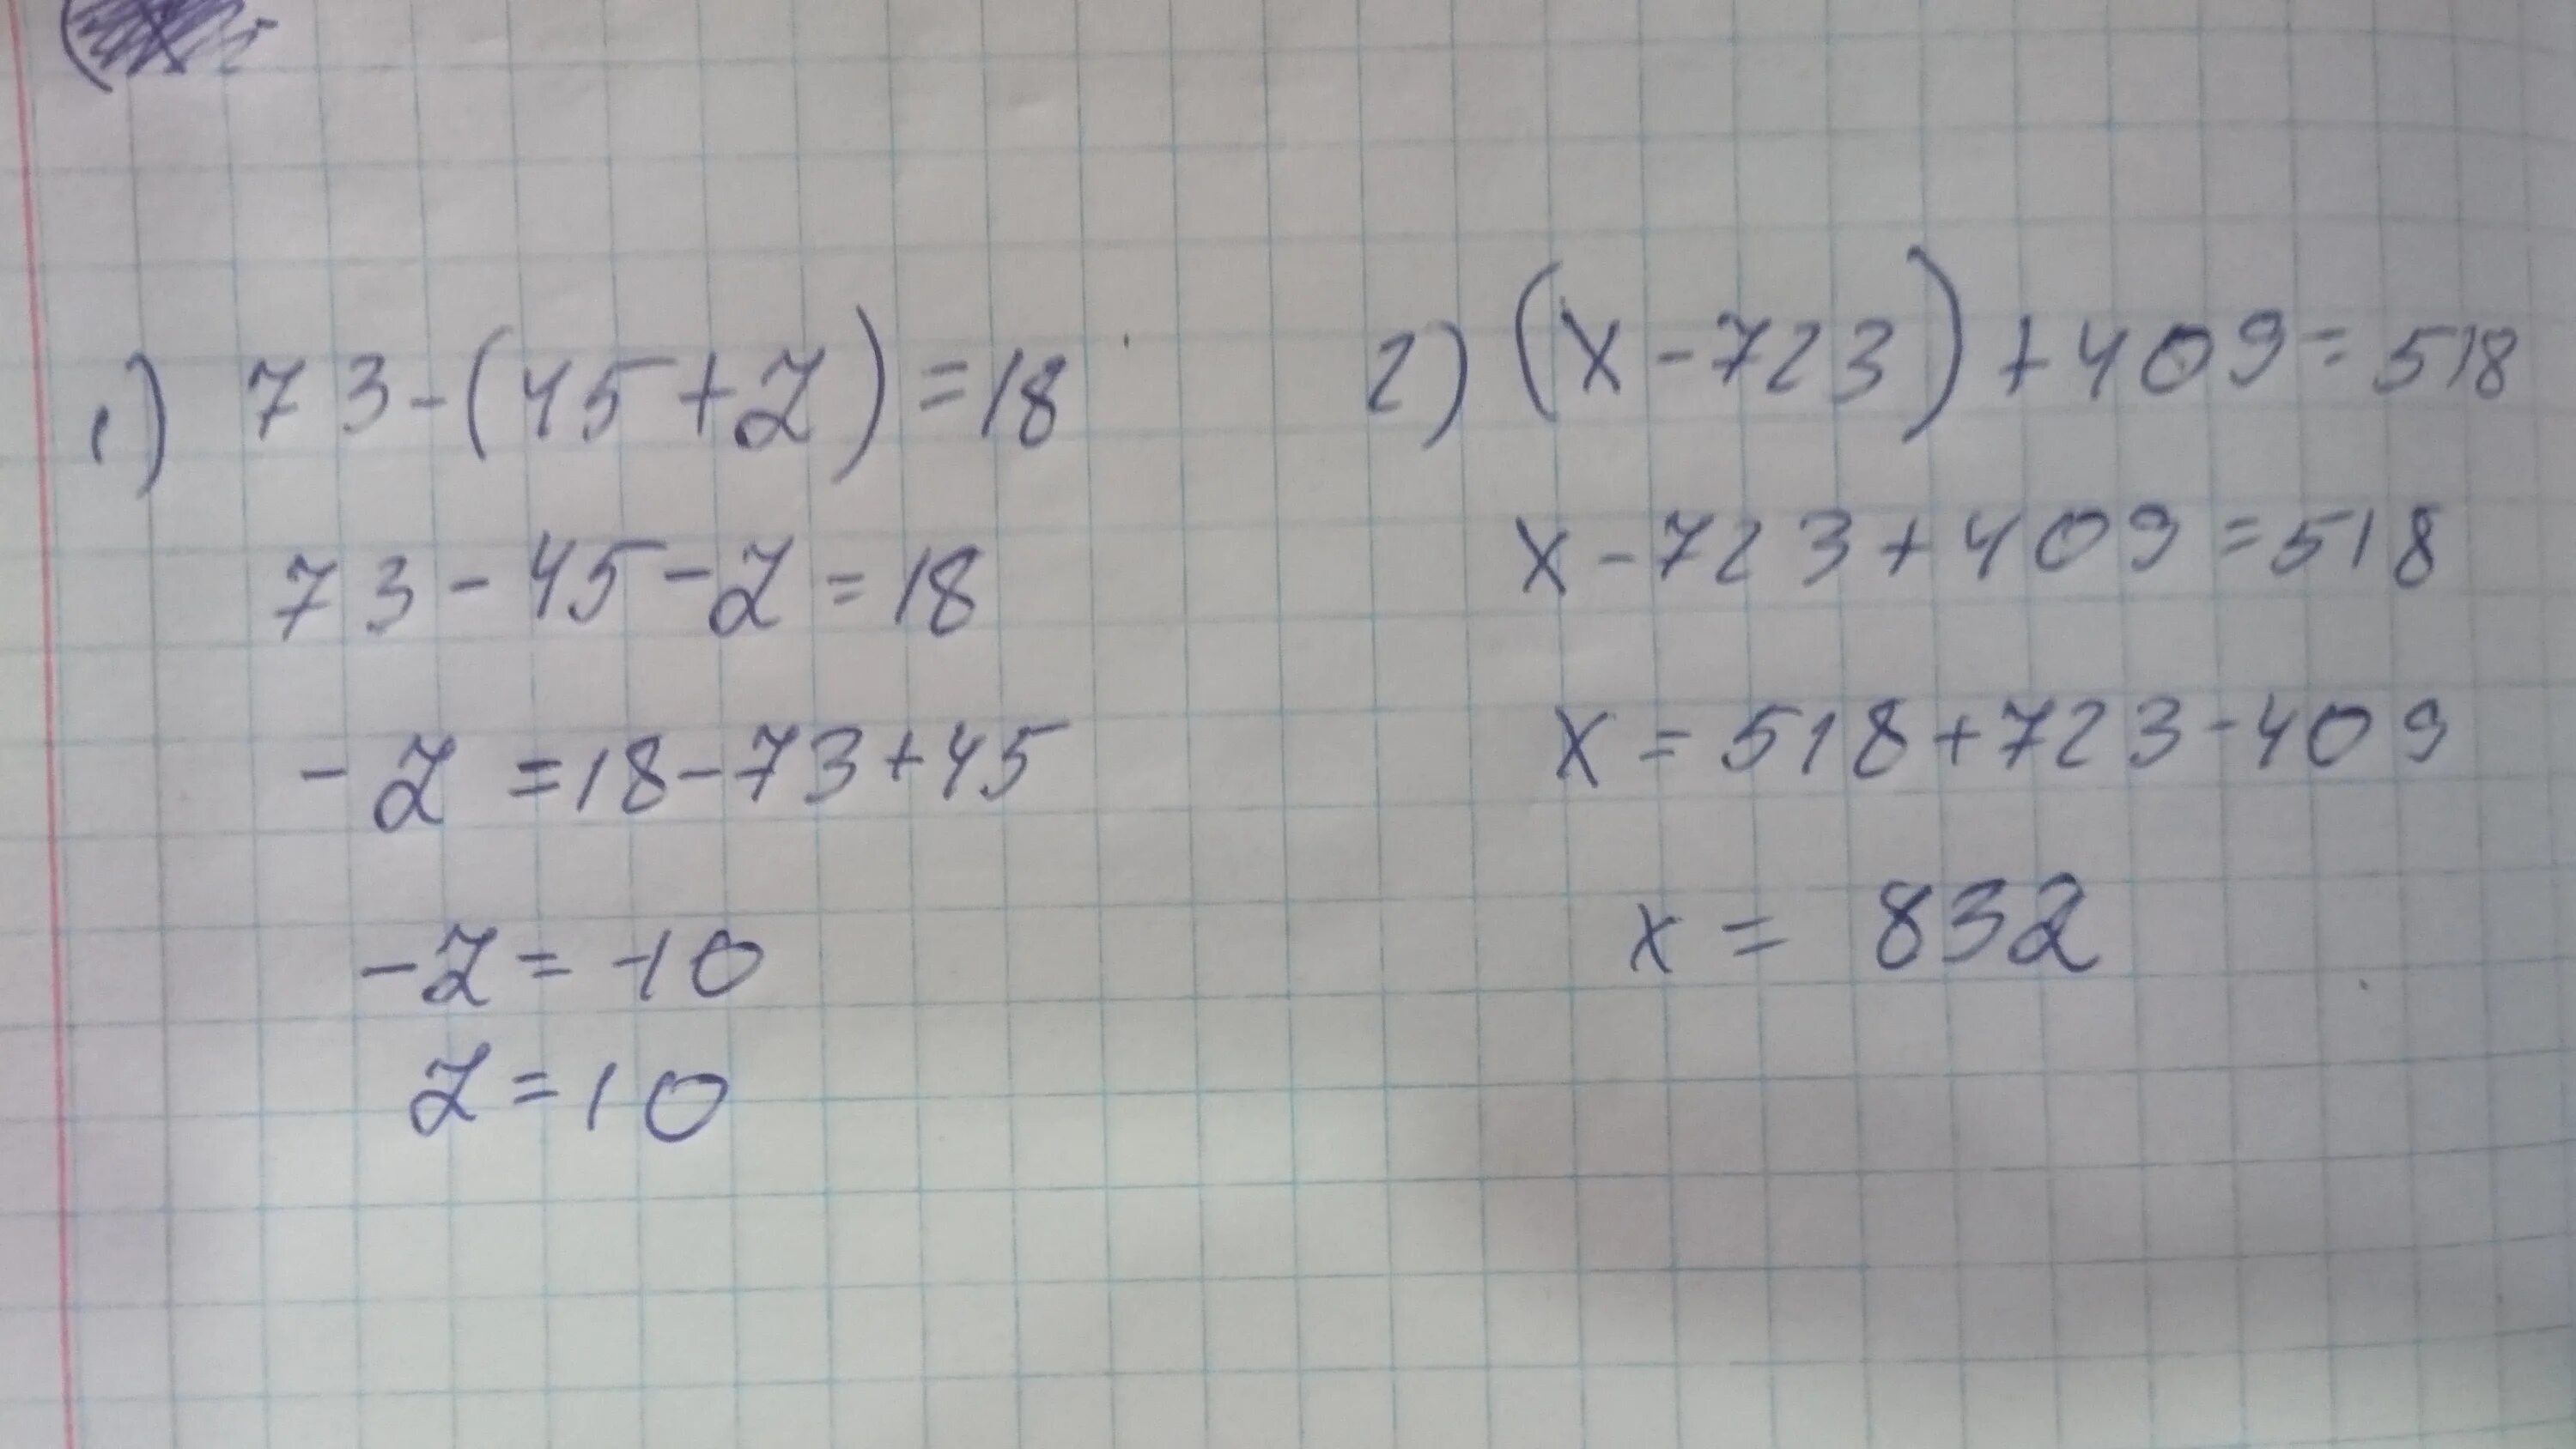 1 7x 1 решение. Решить уравнение (x-723) +409=518. (X-723)+402=. (X-18)-73=39. Реши уравнение( x-723)+409=518.